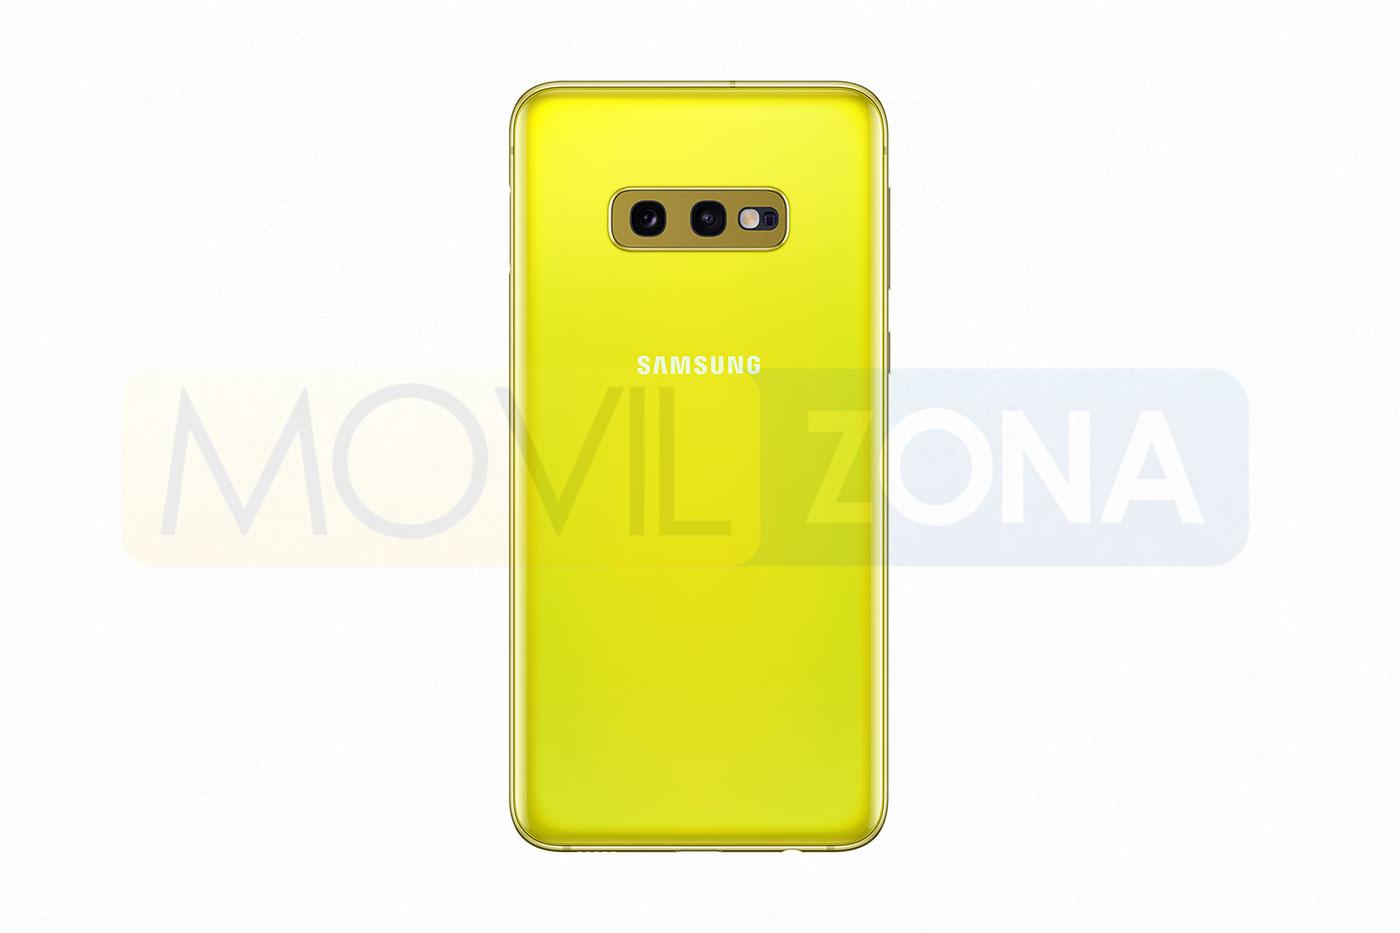 Samsung Galaxy S10e amarillo doble cámara